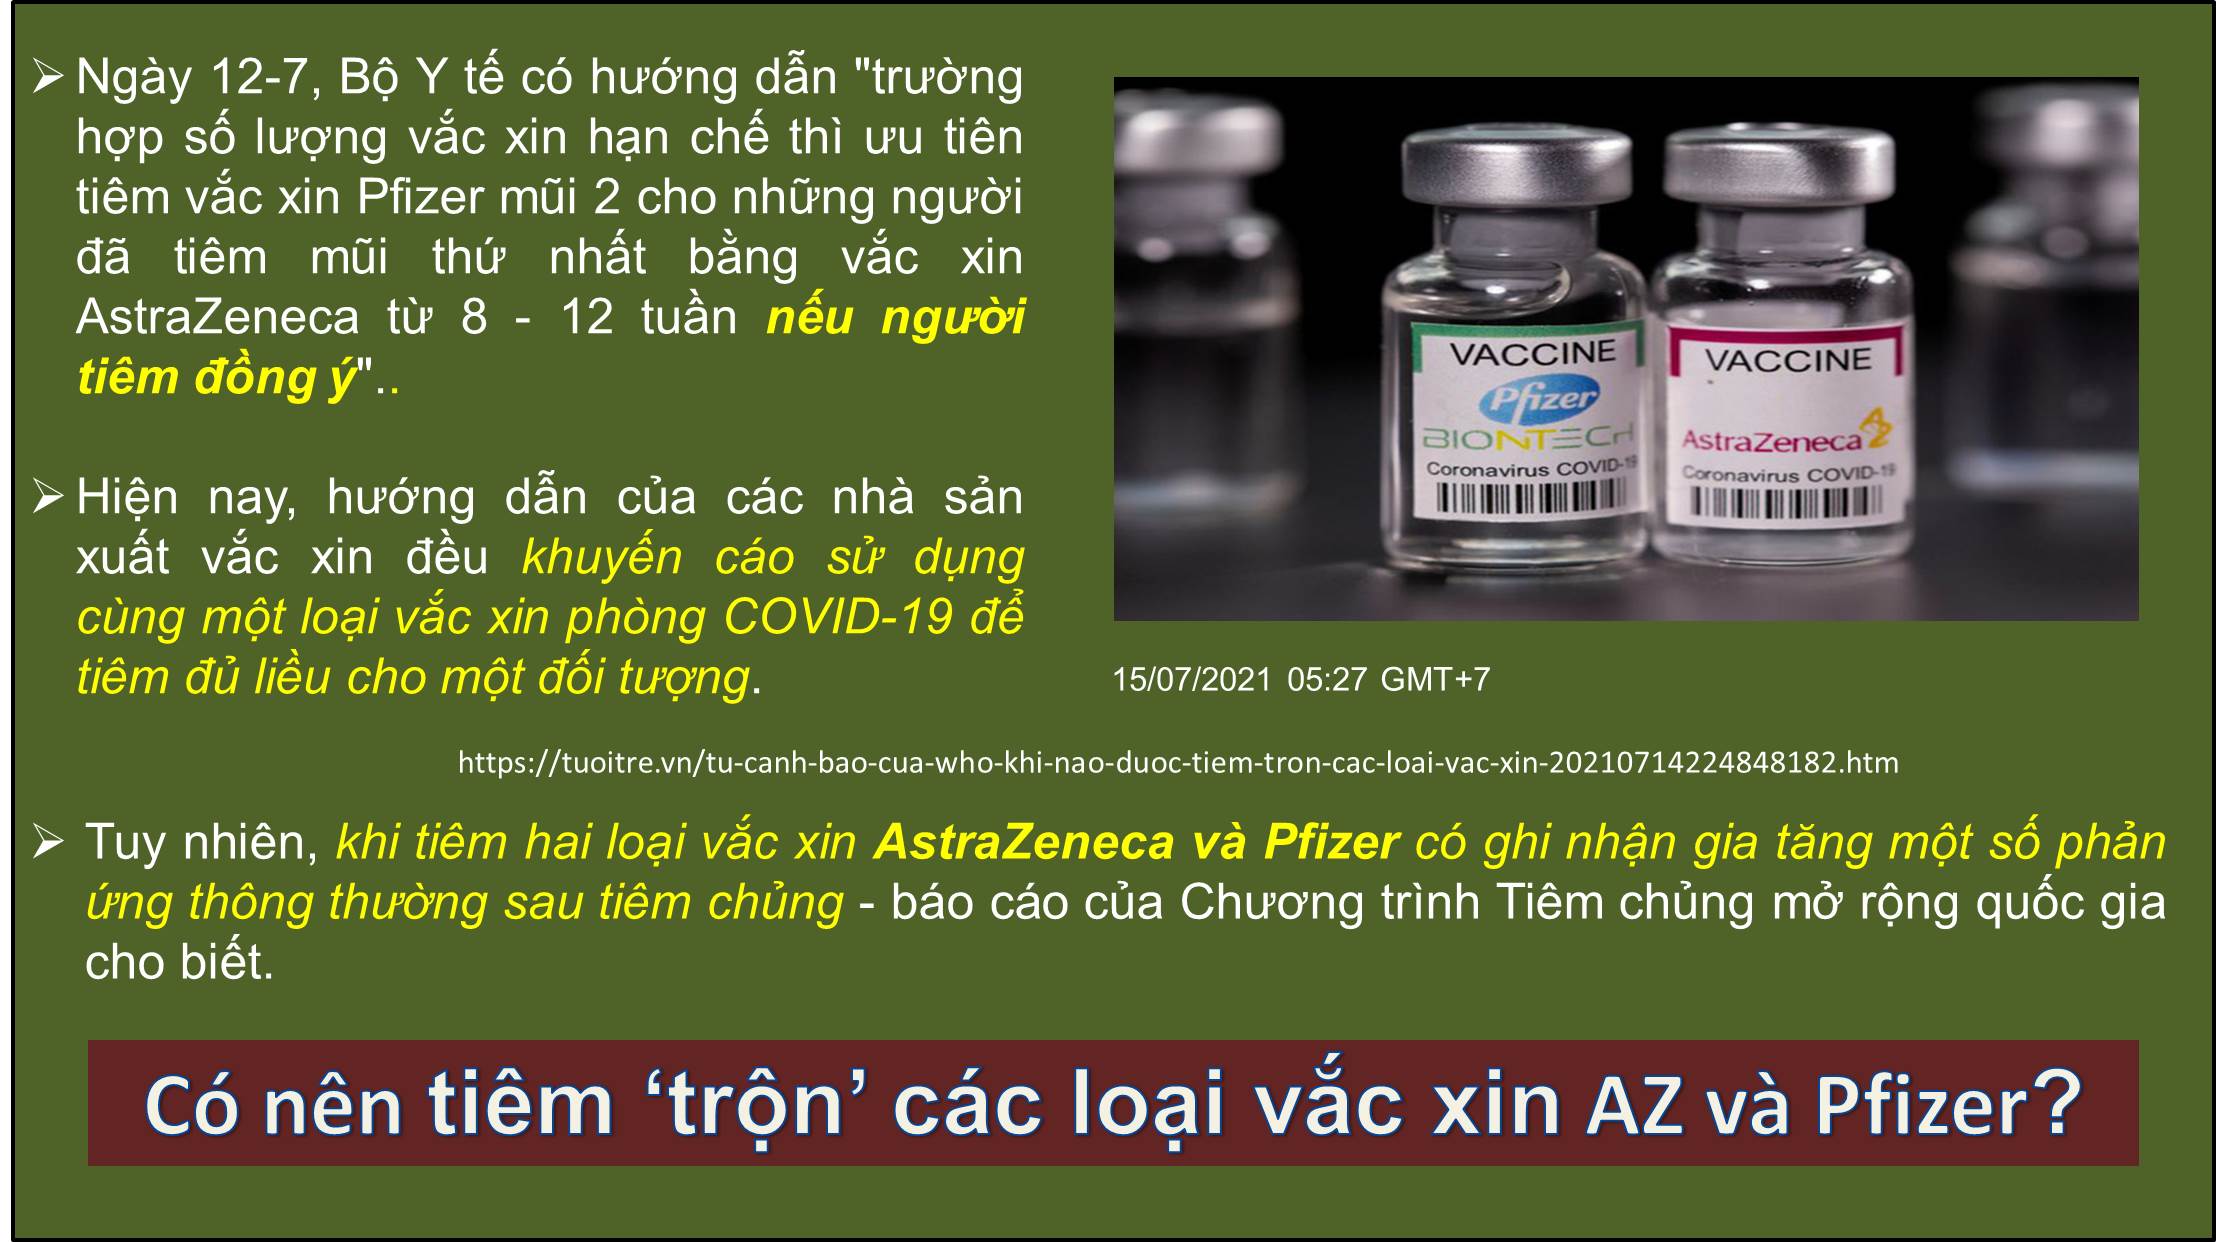 Có nên tiêm ‘trộn’ các loại vắc xin AsatraZeneca và Pfizer BioNtech ???